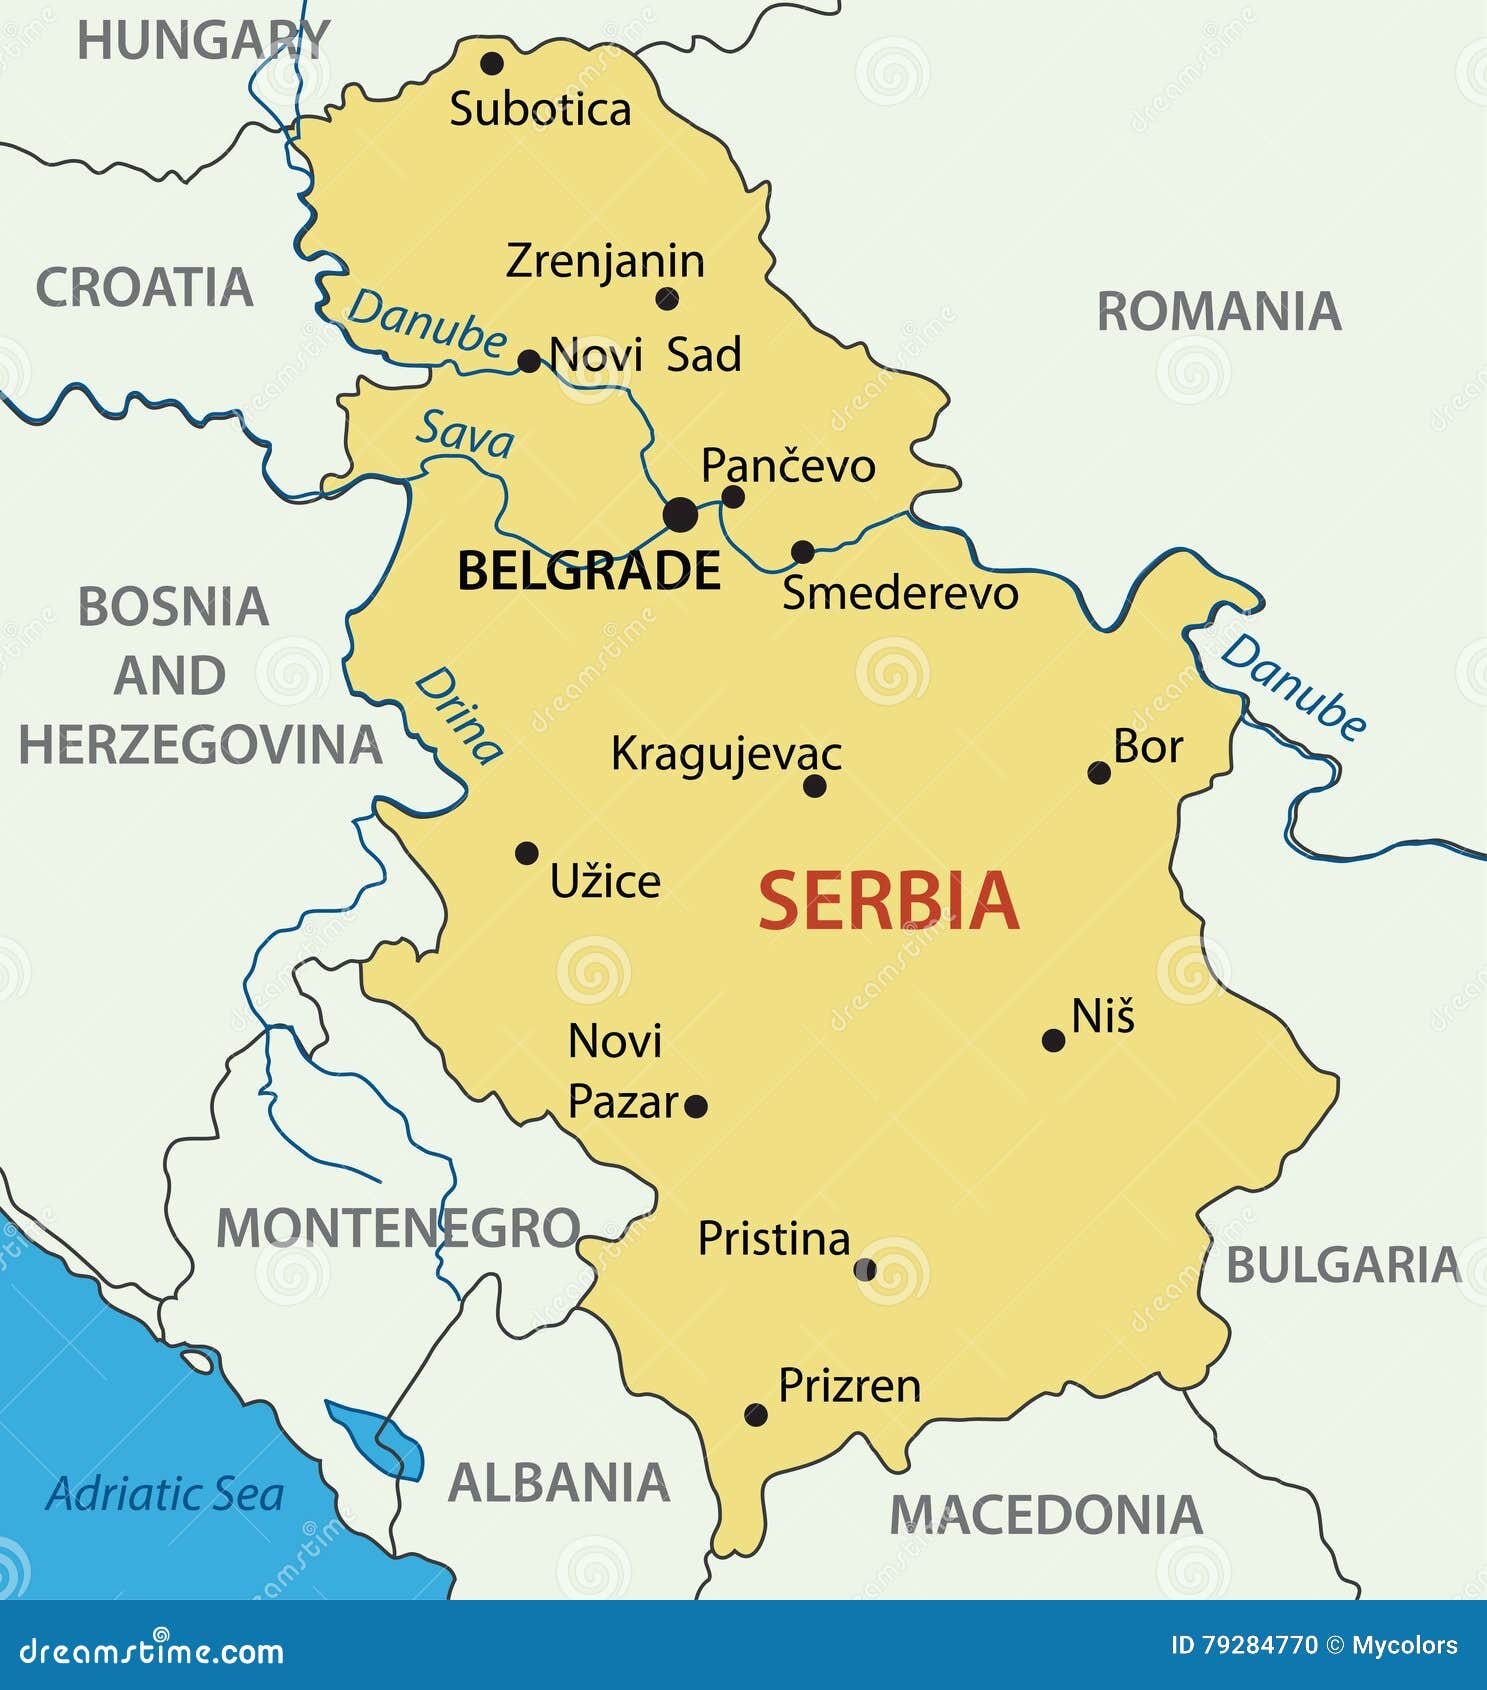 塞尔维亚共和国的首都——贝尔格莱德 - 哔哩哔哩